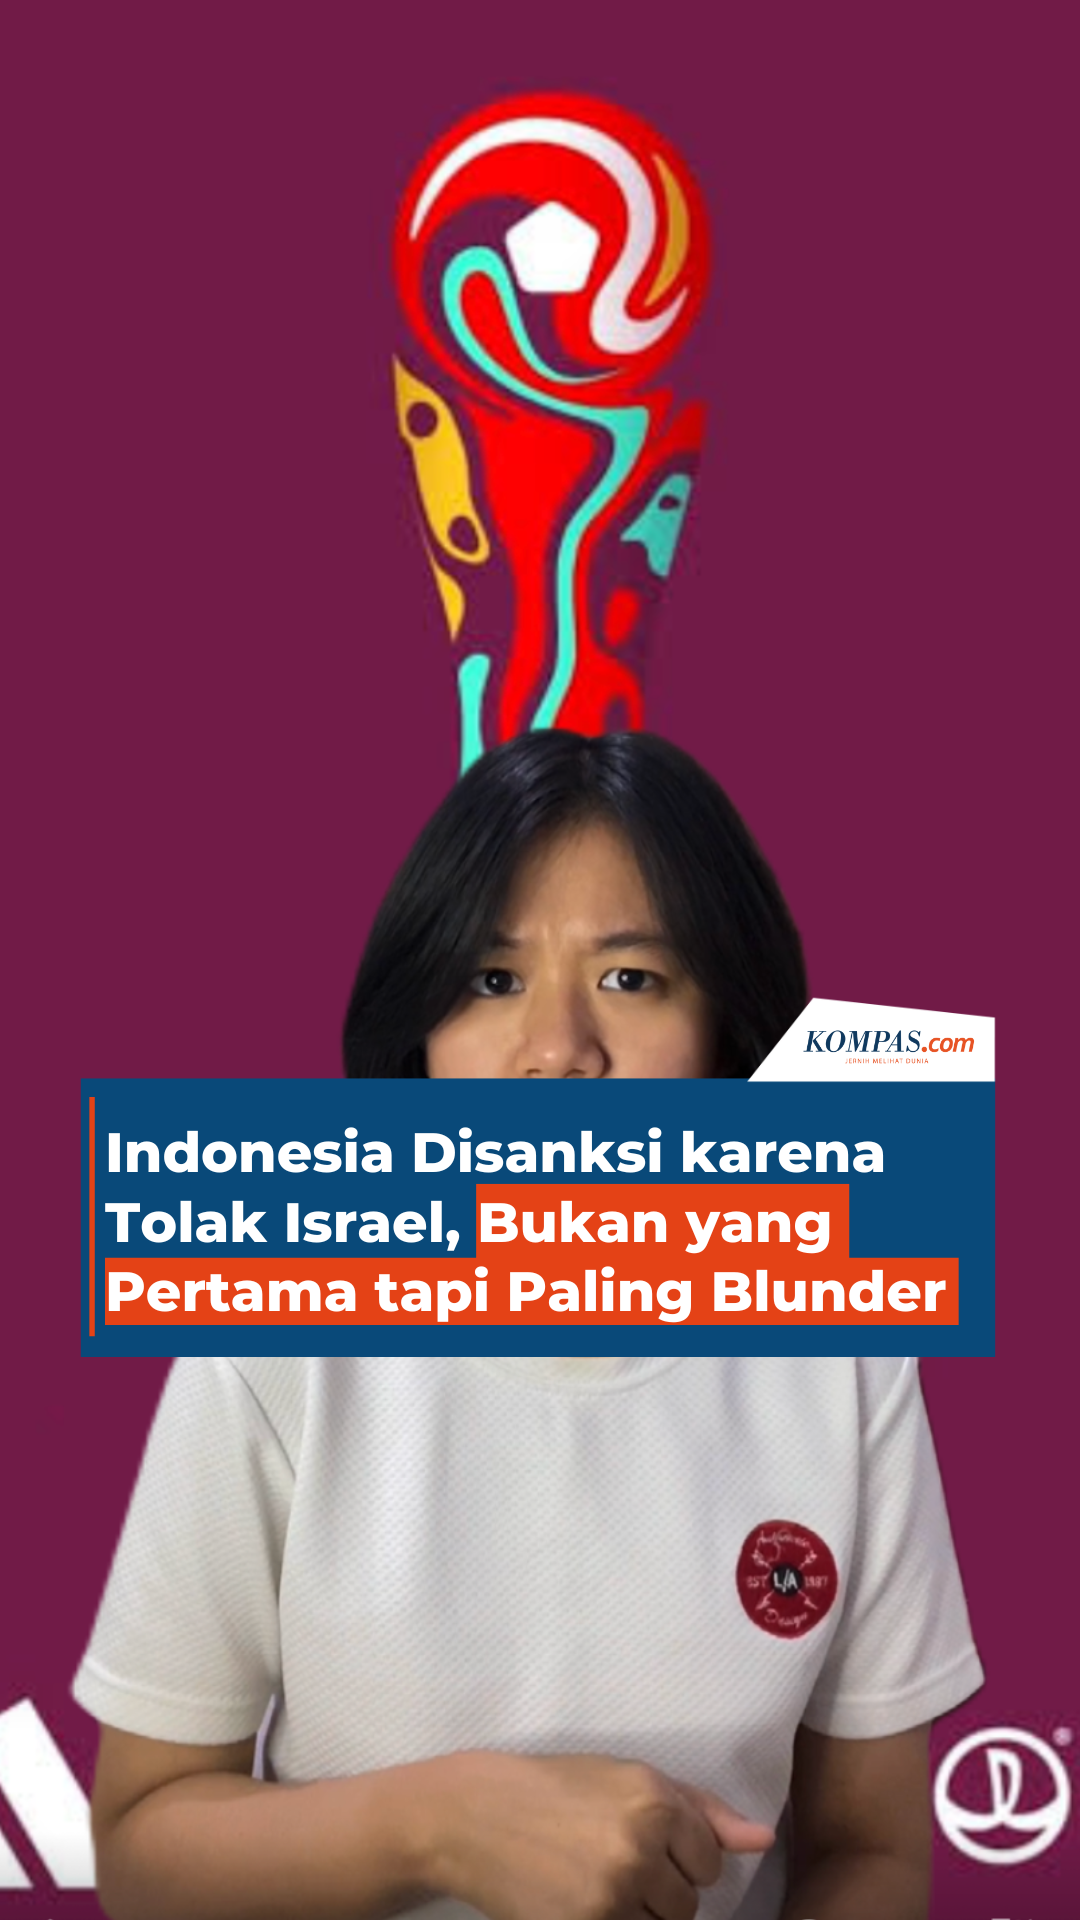 Indonesia Disanksi karena Tolak Israel, Bukan yang Pertama tapi Paling Blunder